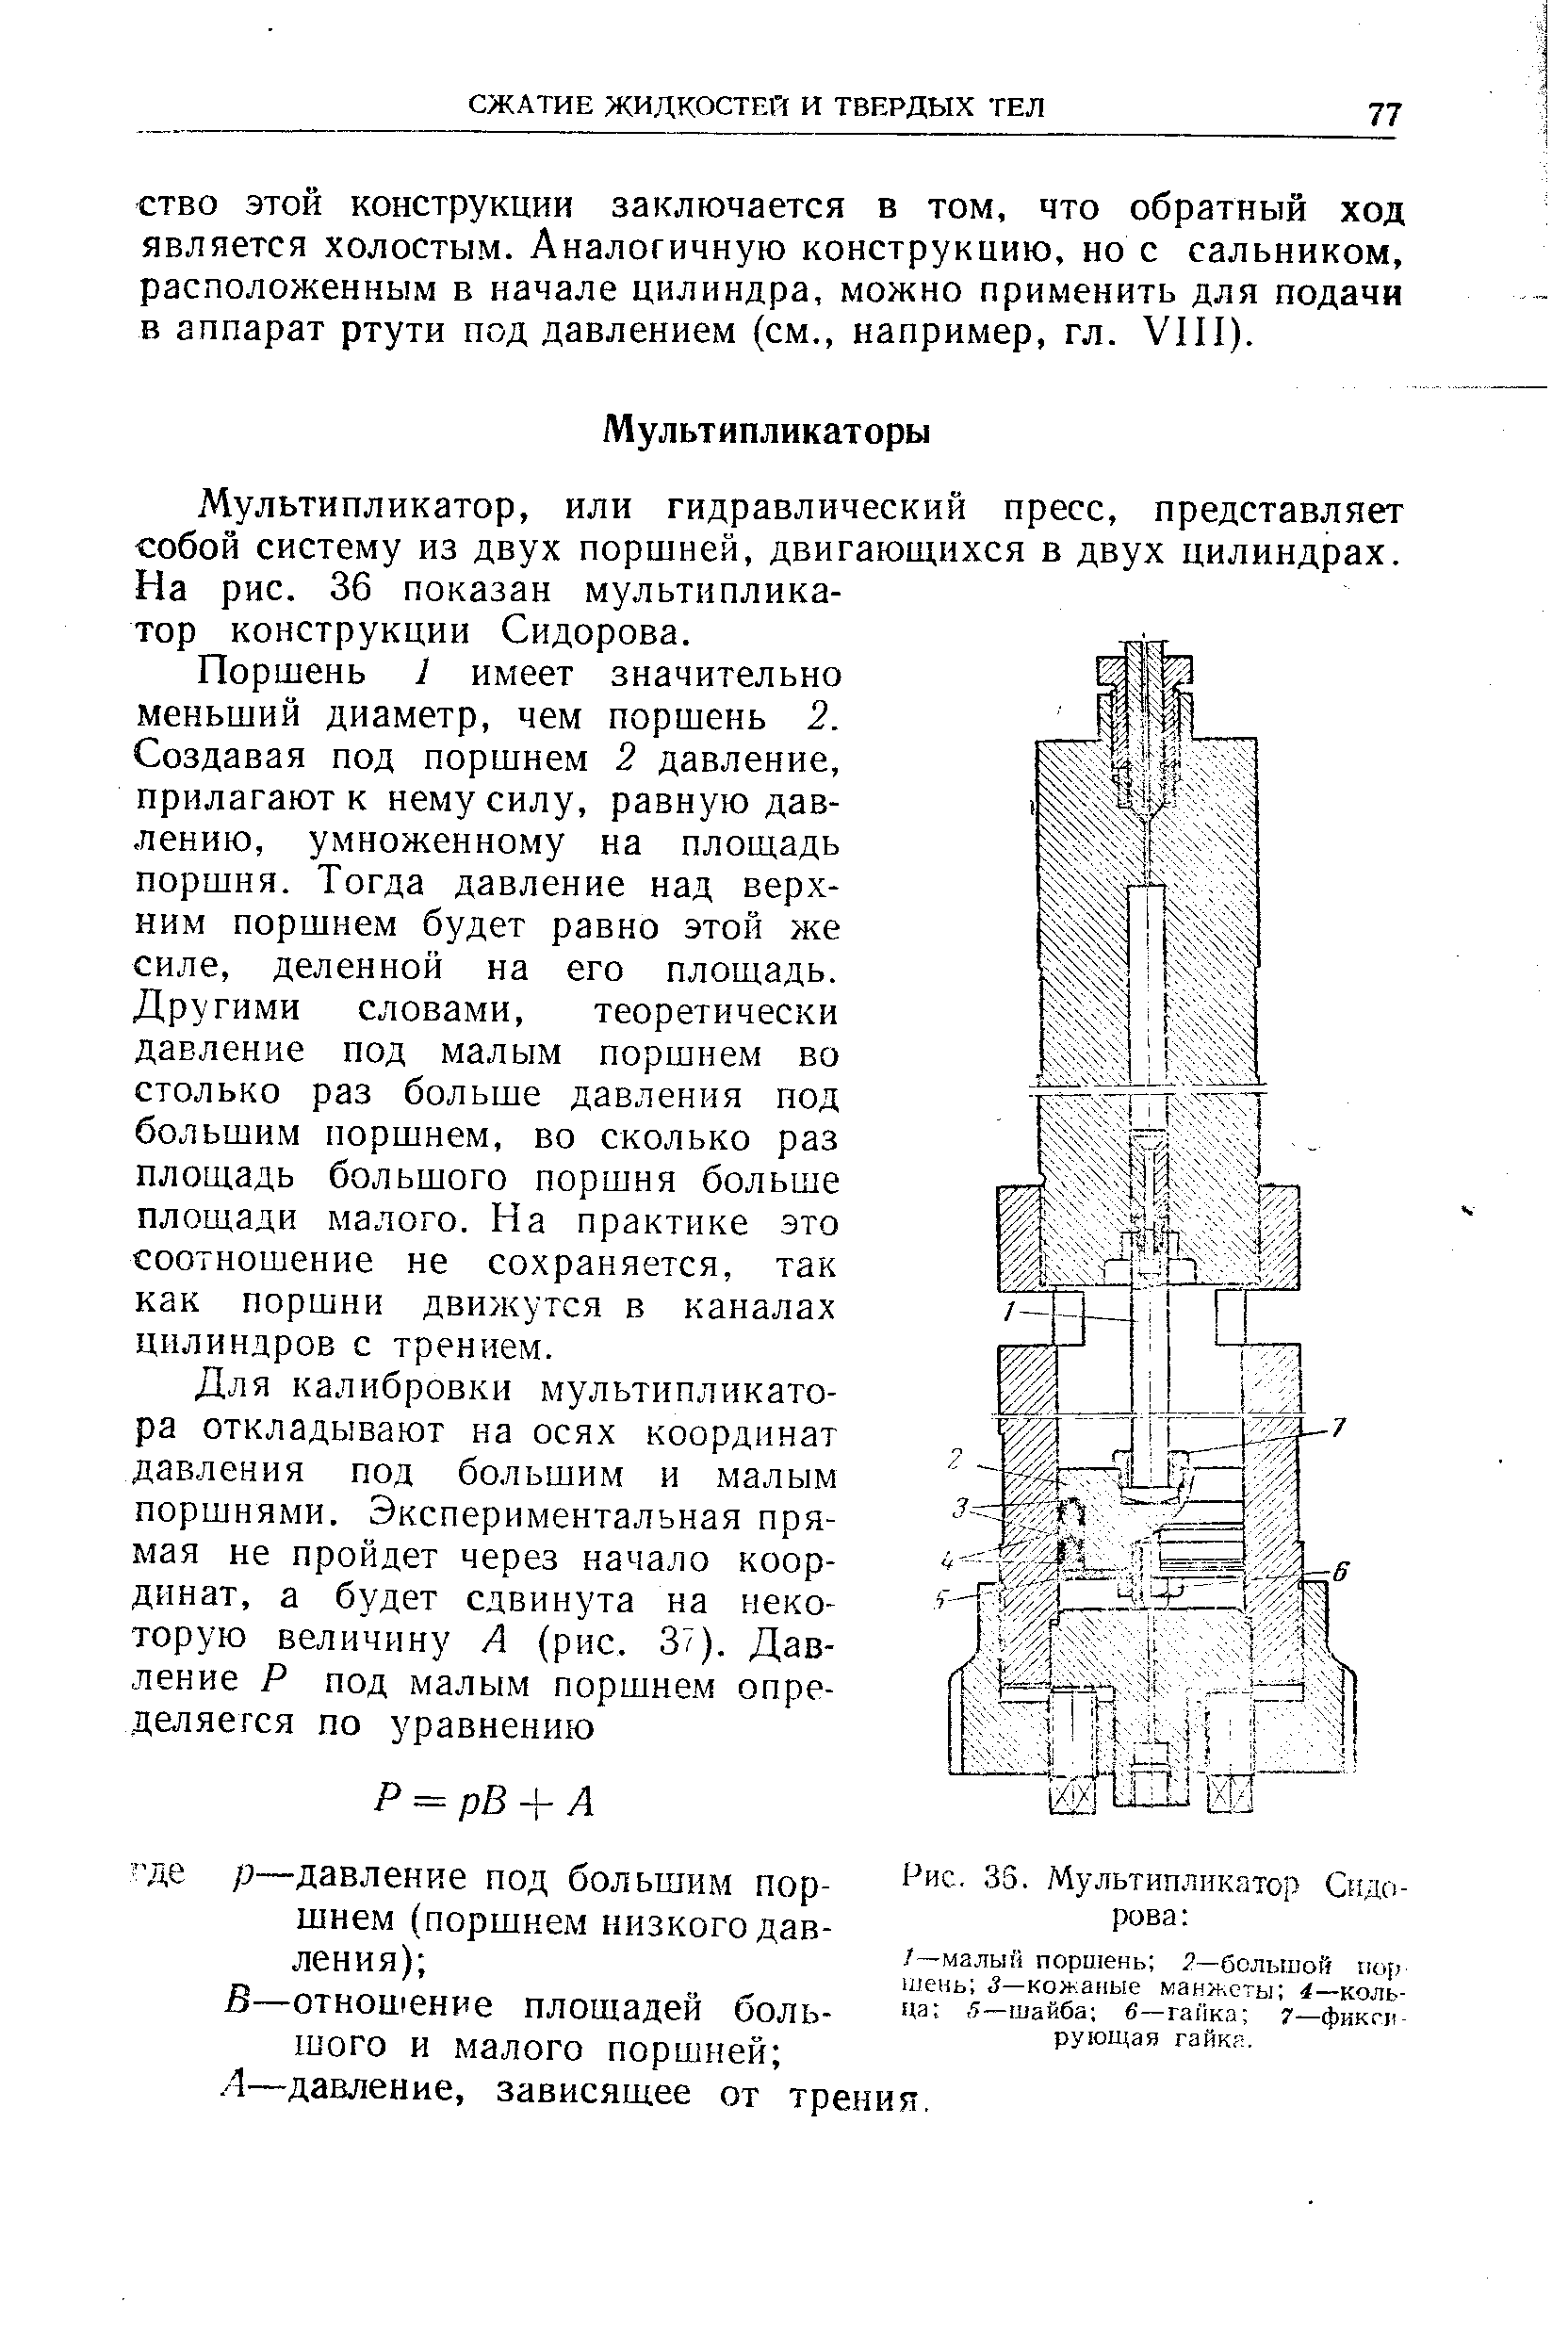 Мультипликатор, или гидравлический пресс, представляет собой систему из двух поршней, двигающихся в двух цилиндрах. На рис. 36 показан мультипликатор конструкции Сидорова.